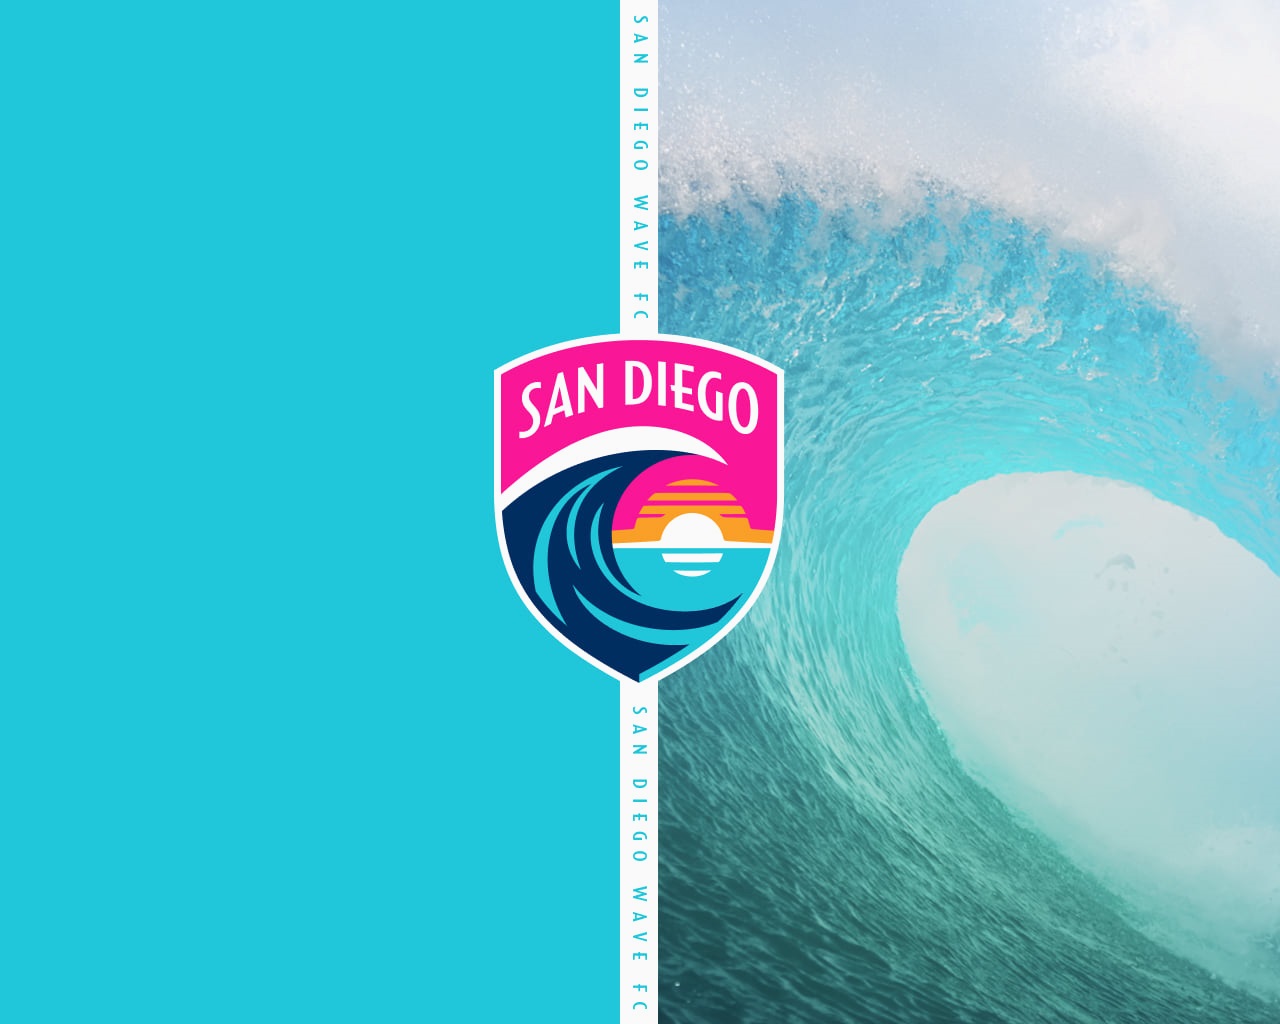 San Diego Wave Logo Revealed